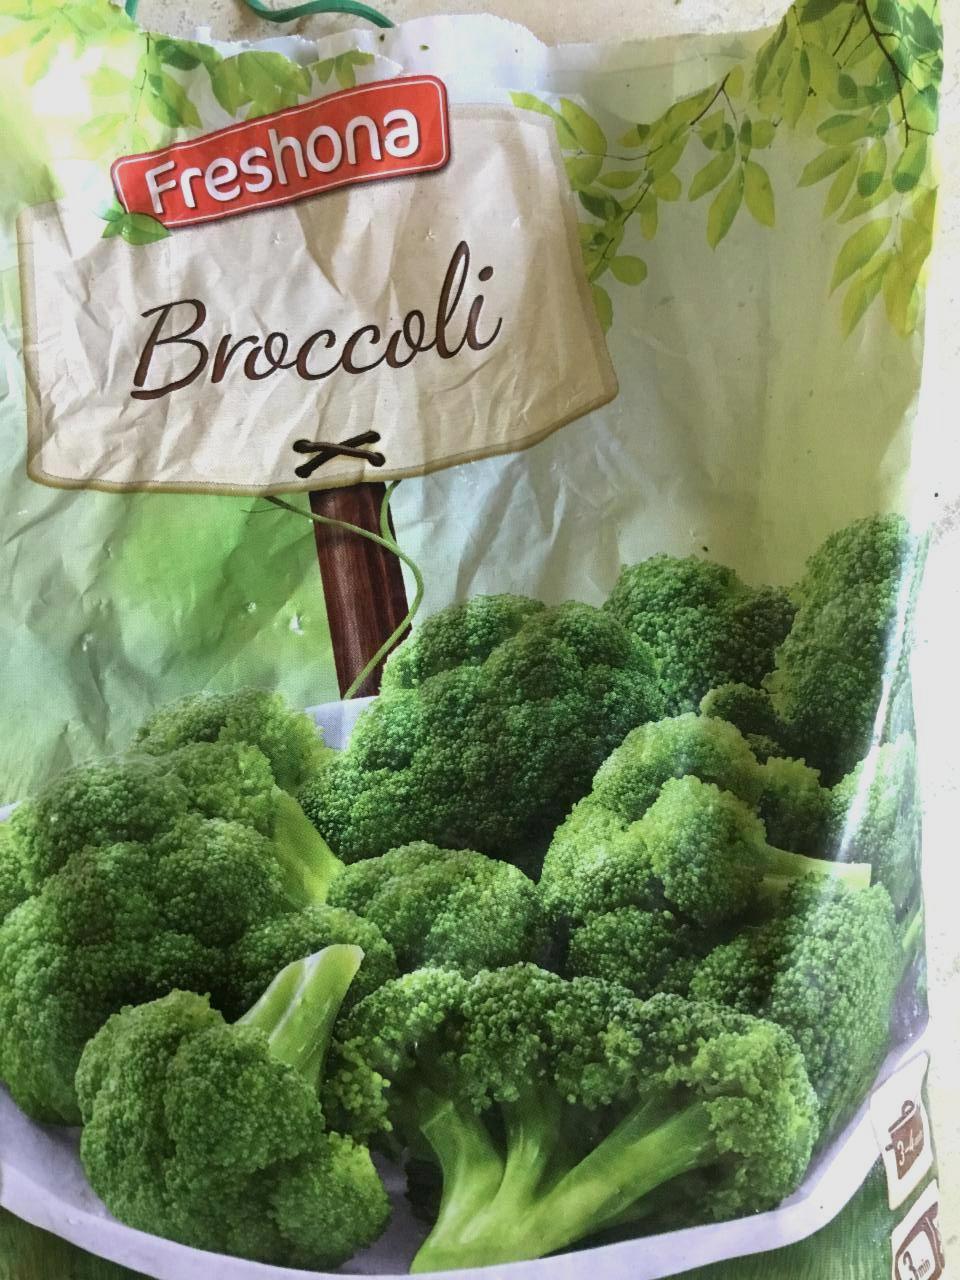 Képek - Broccoli Freshona